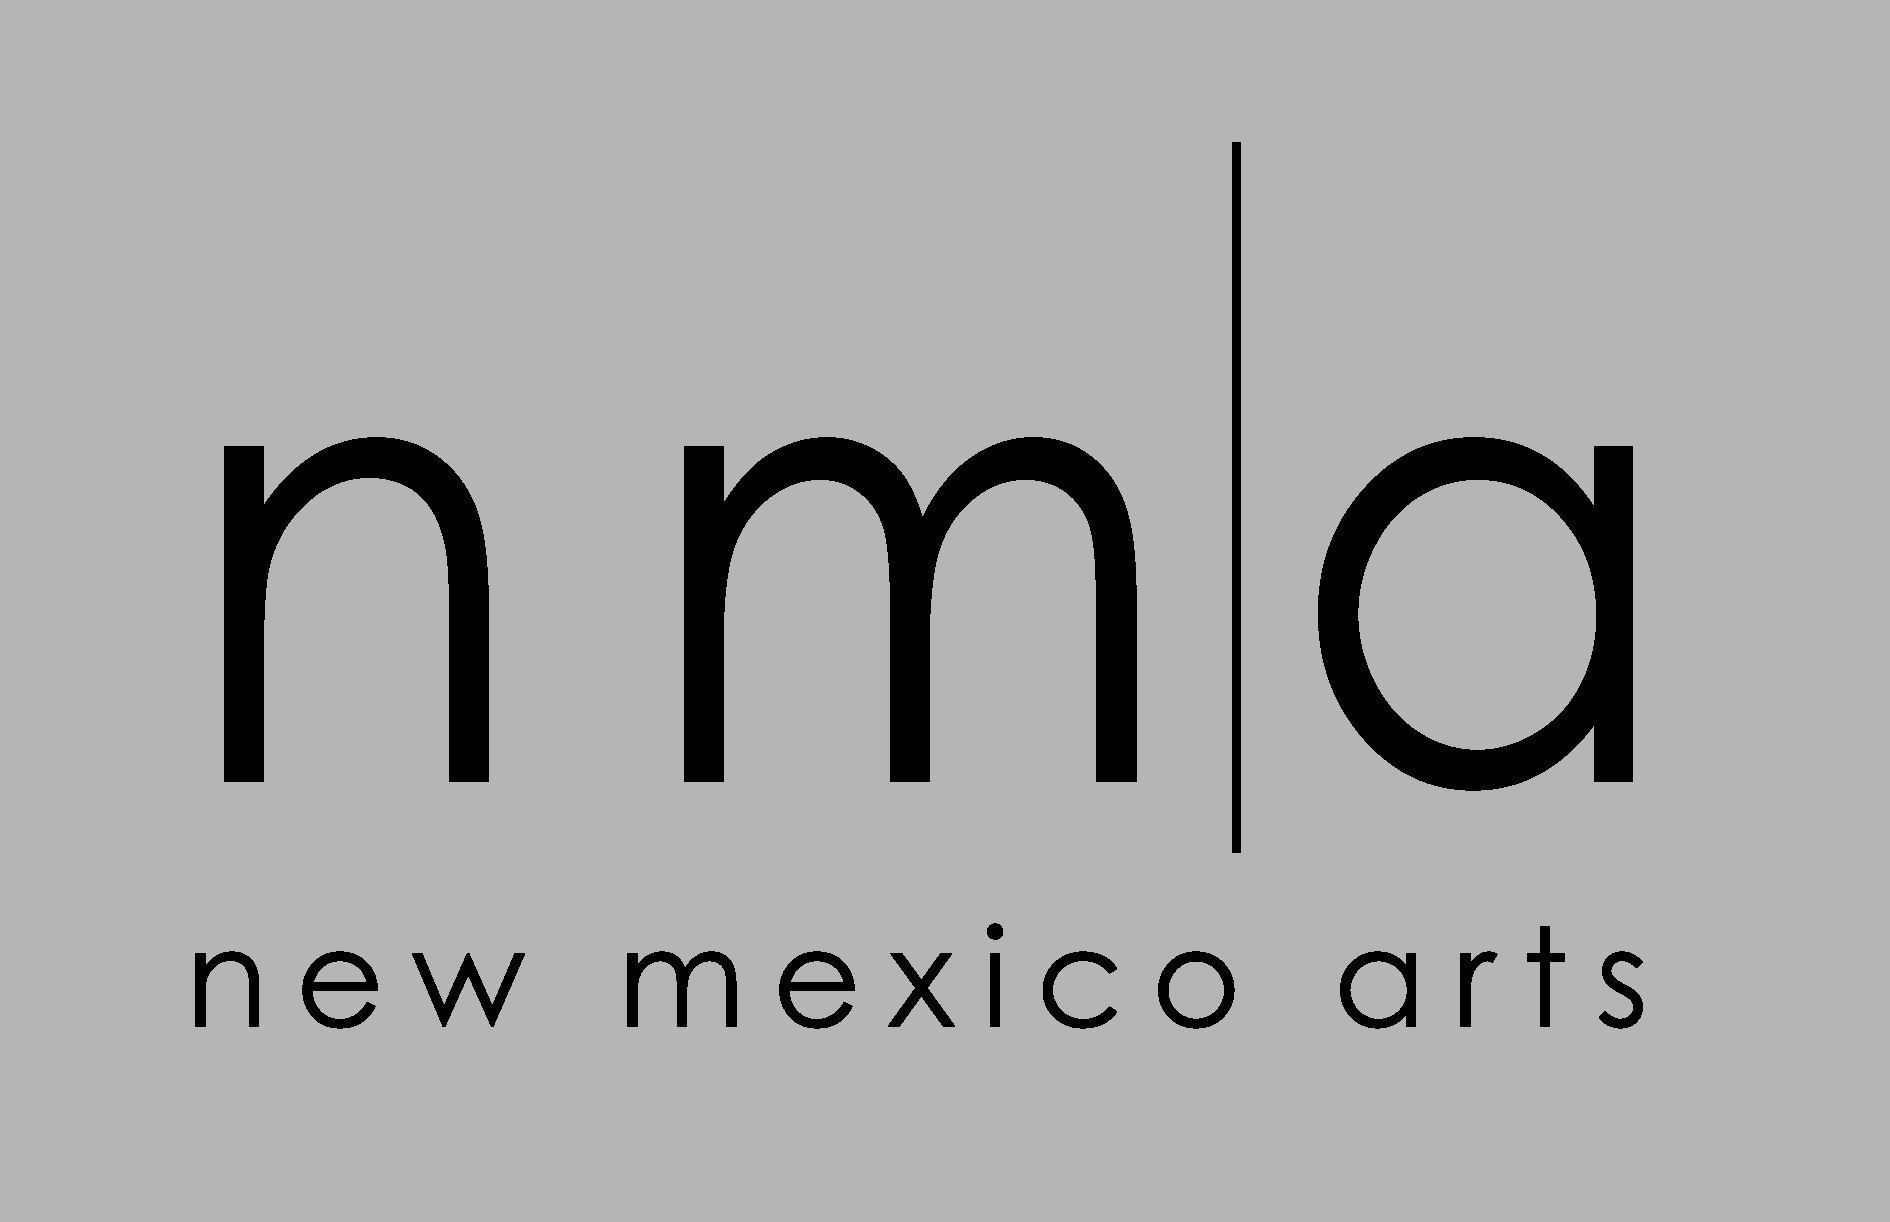 Black and Gray Logo - Logos. New Mexico Arts